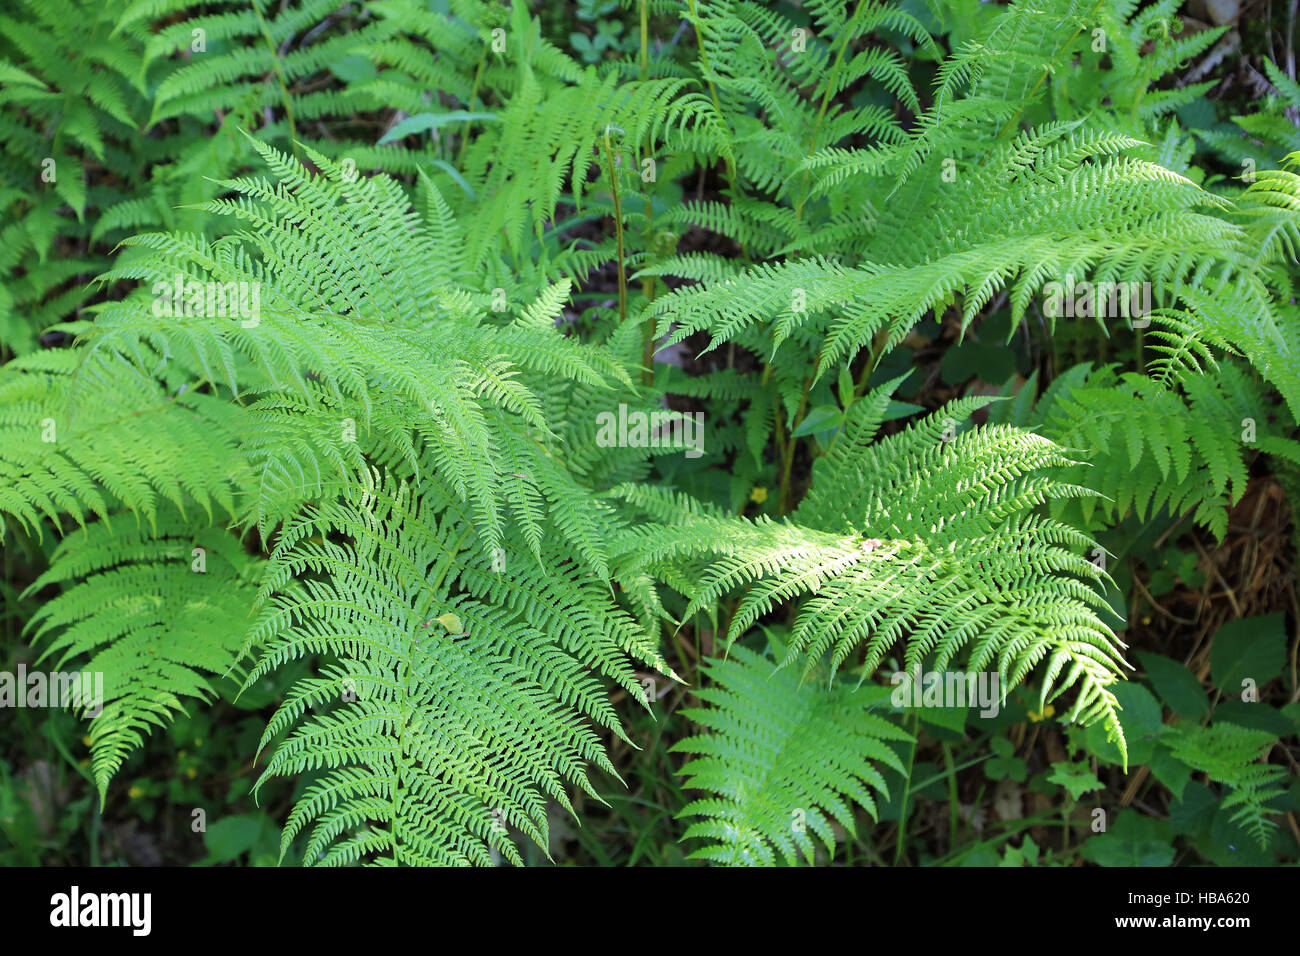 Lady fern, Athyrium filix-femina Stock Photo